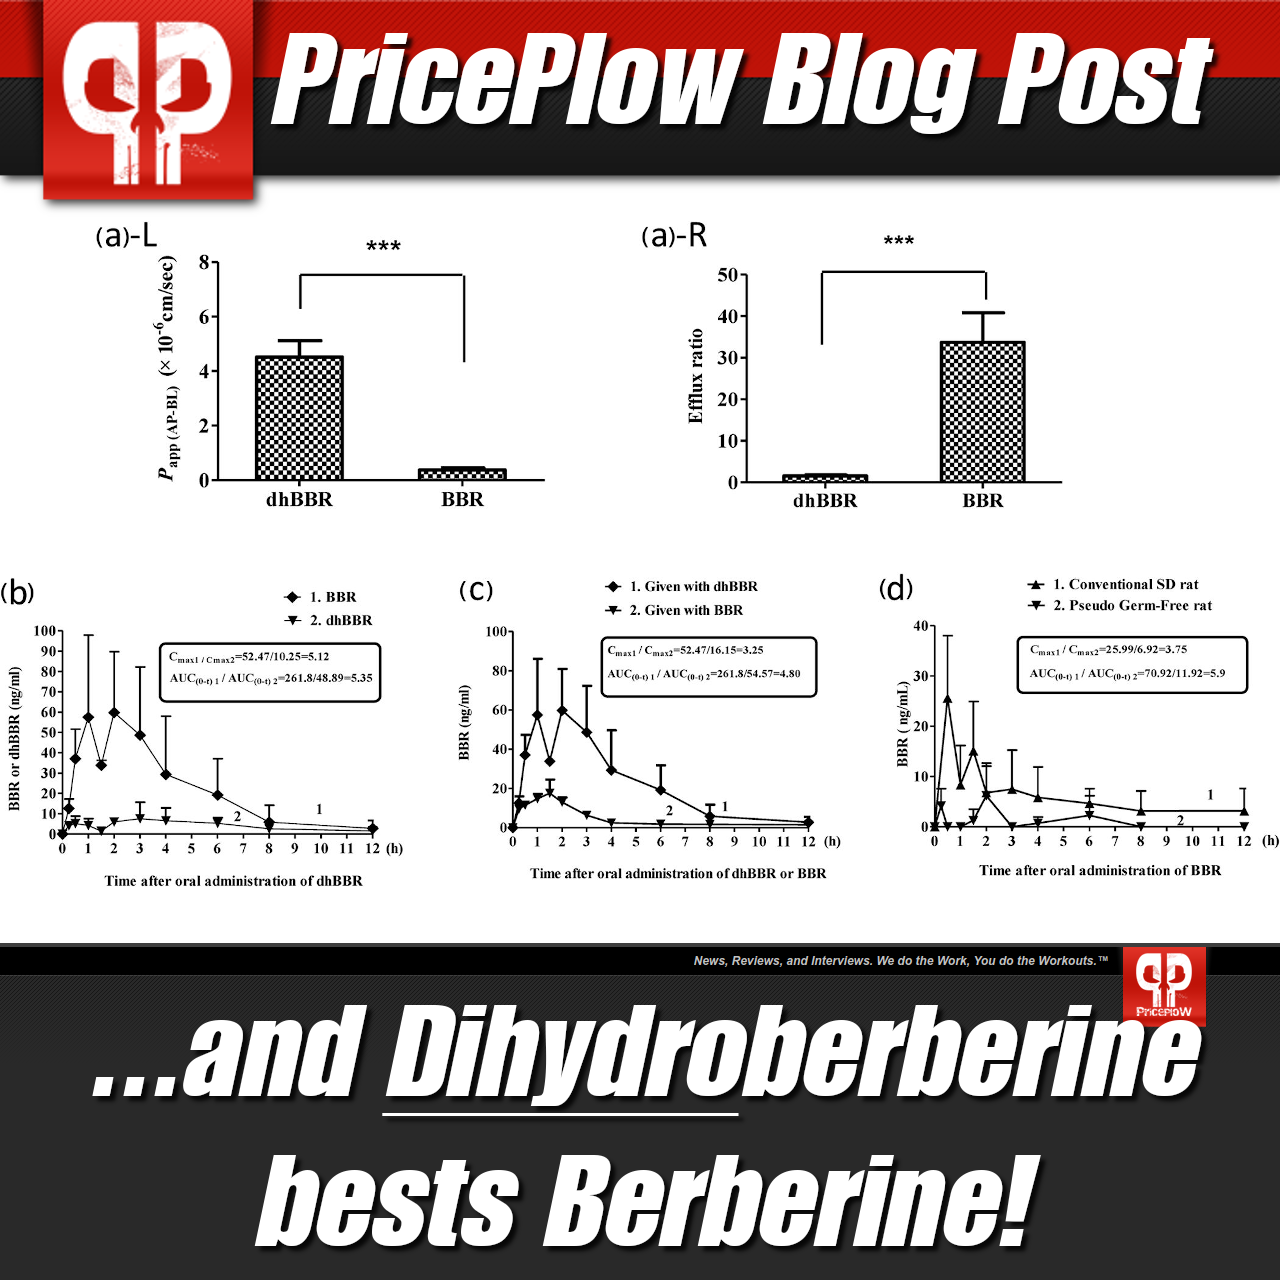 Berberine vs. Dihydroberberine